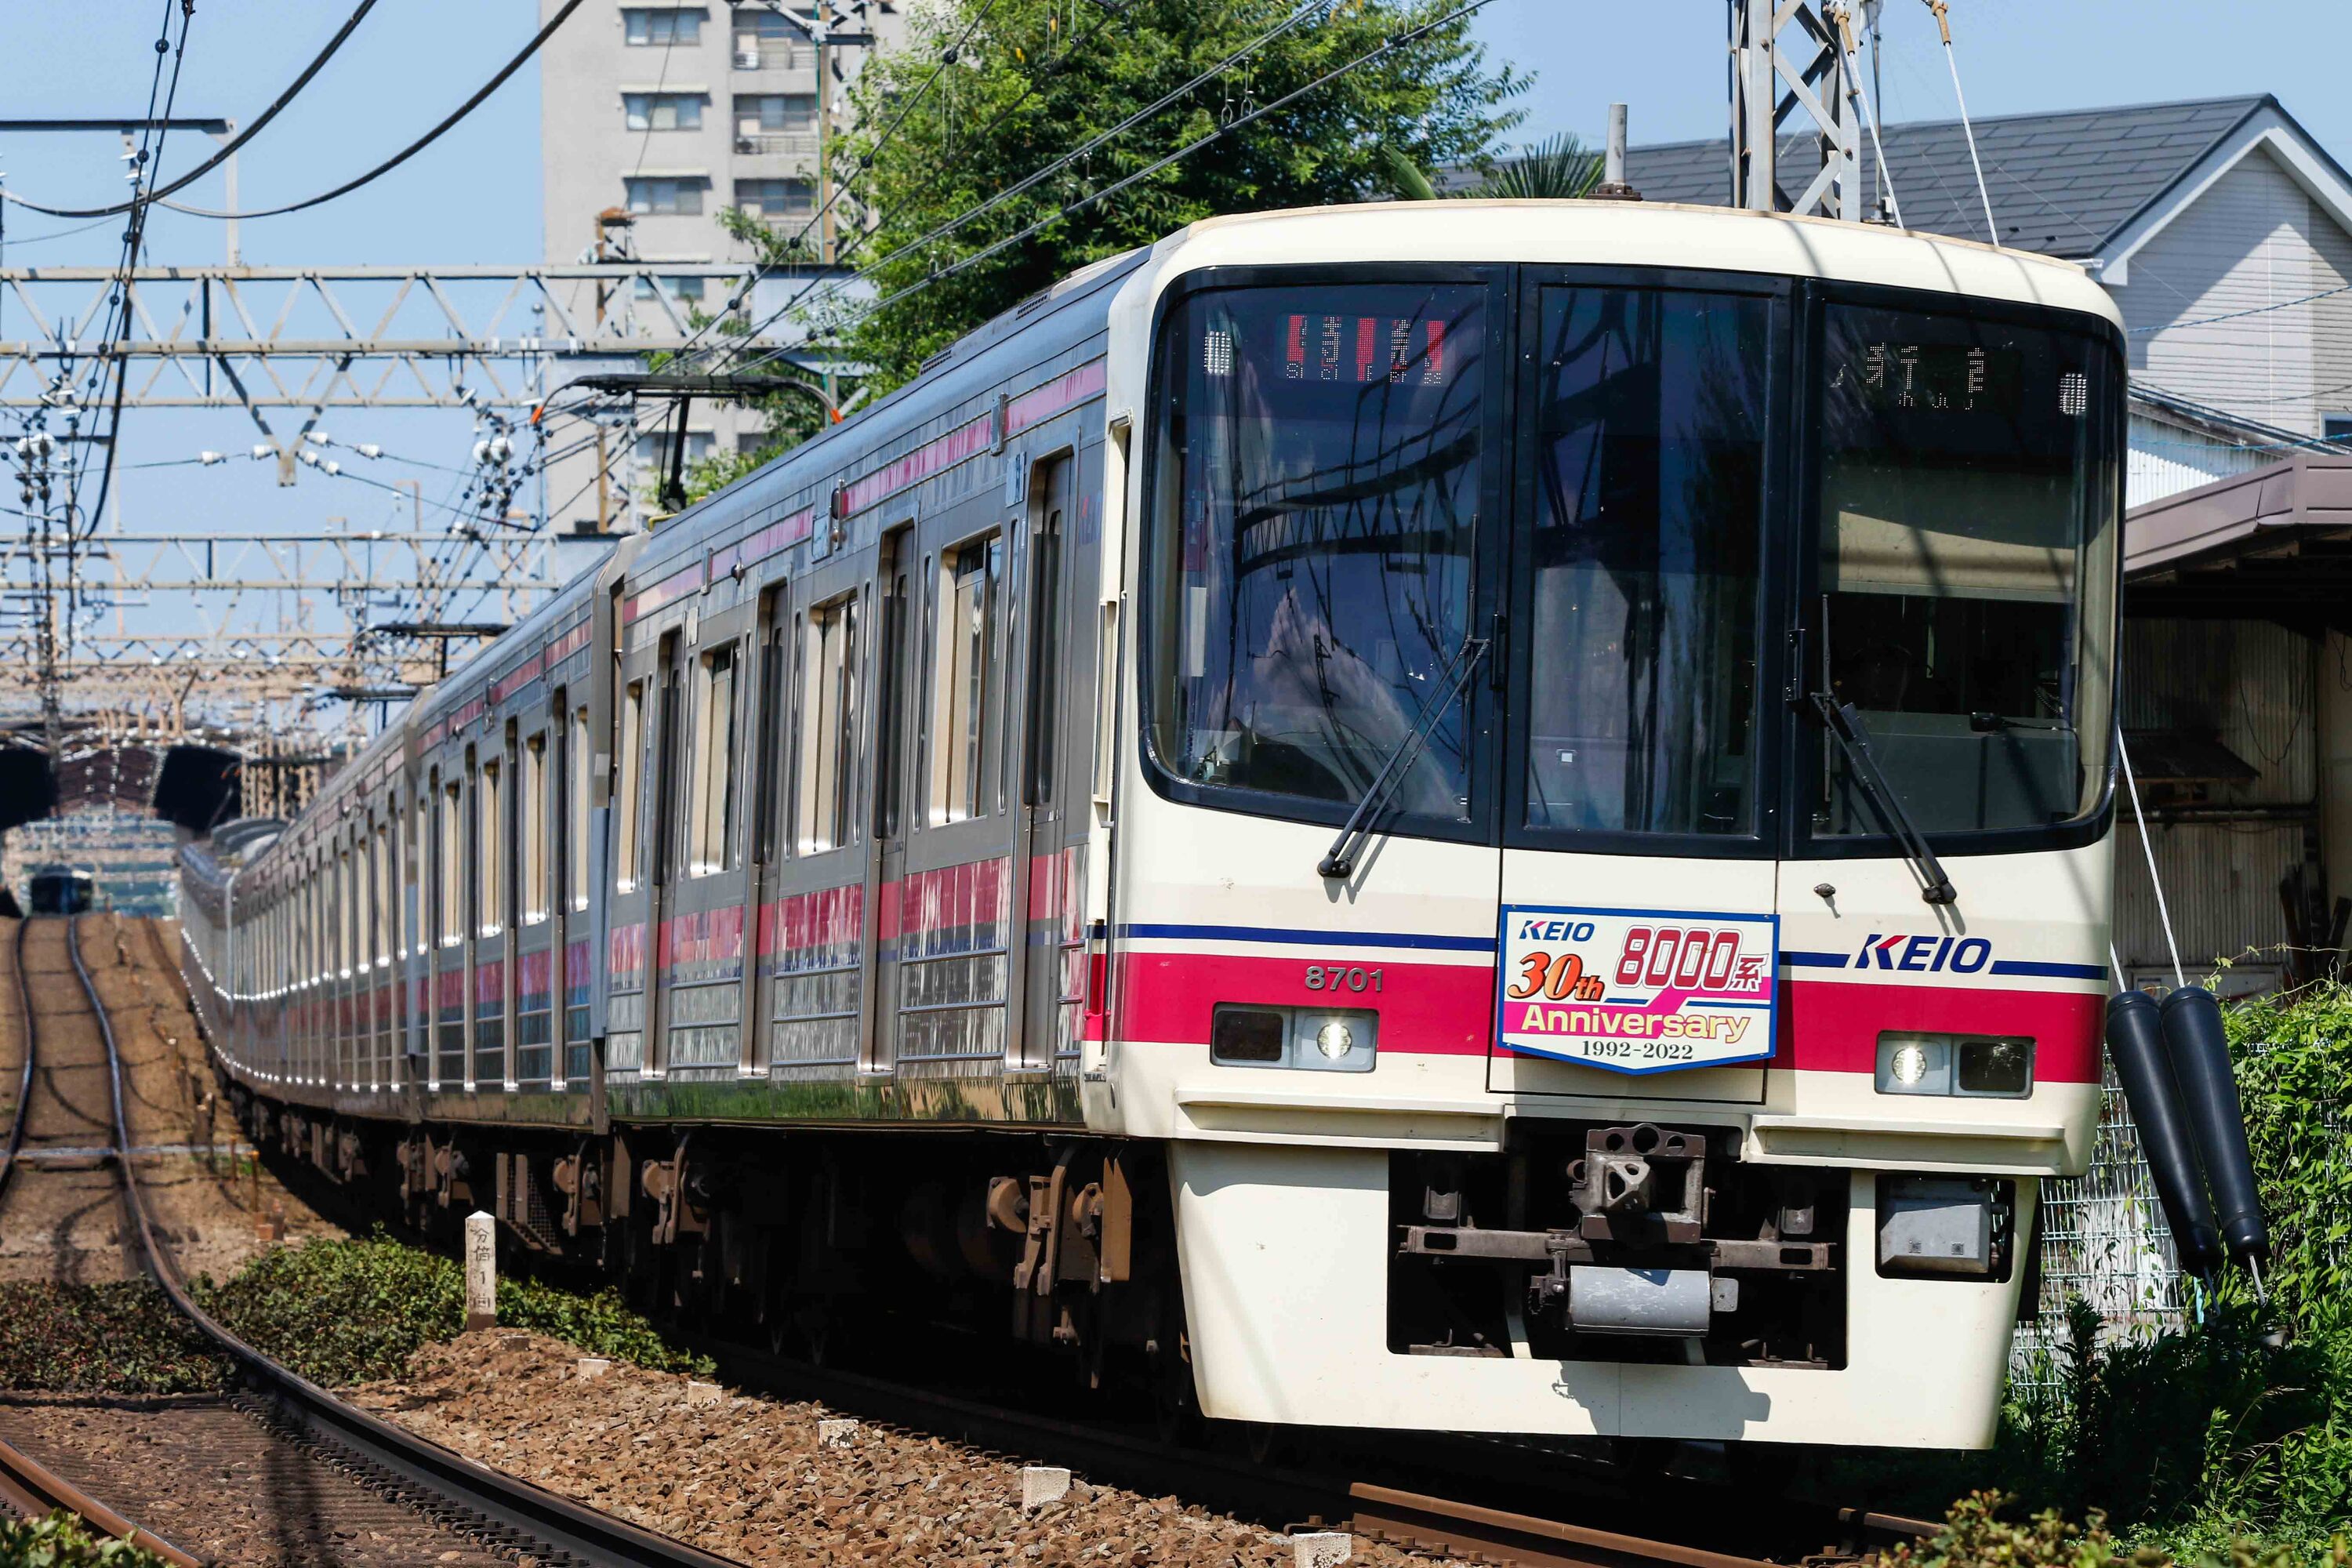 京王線の電車